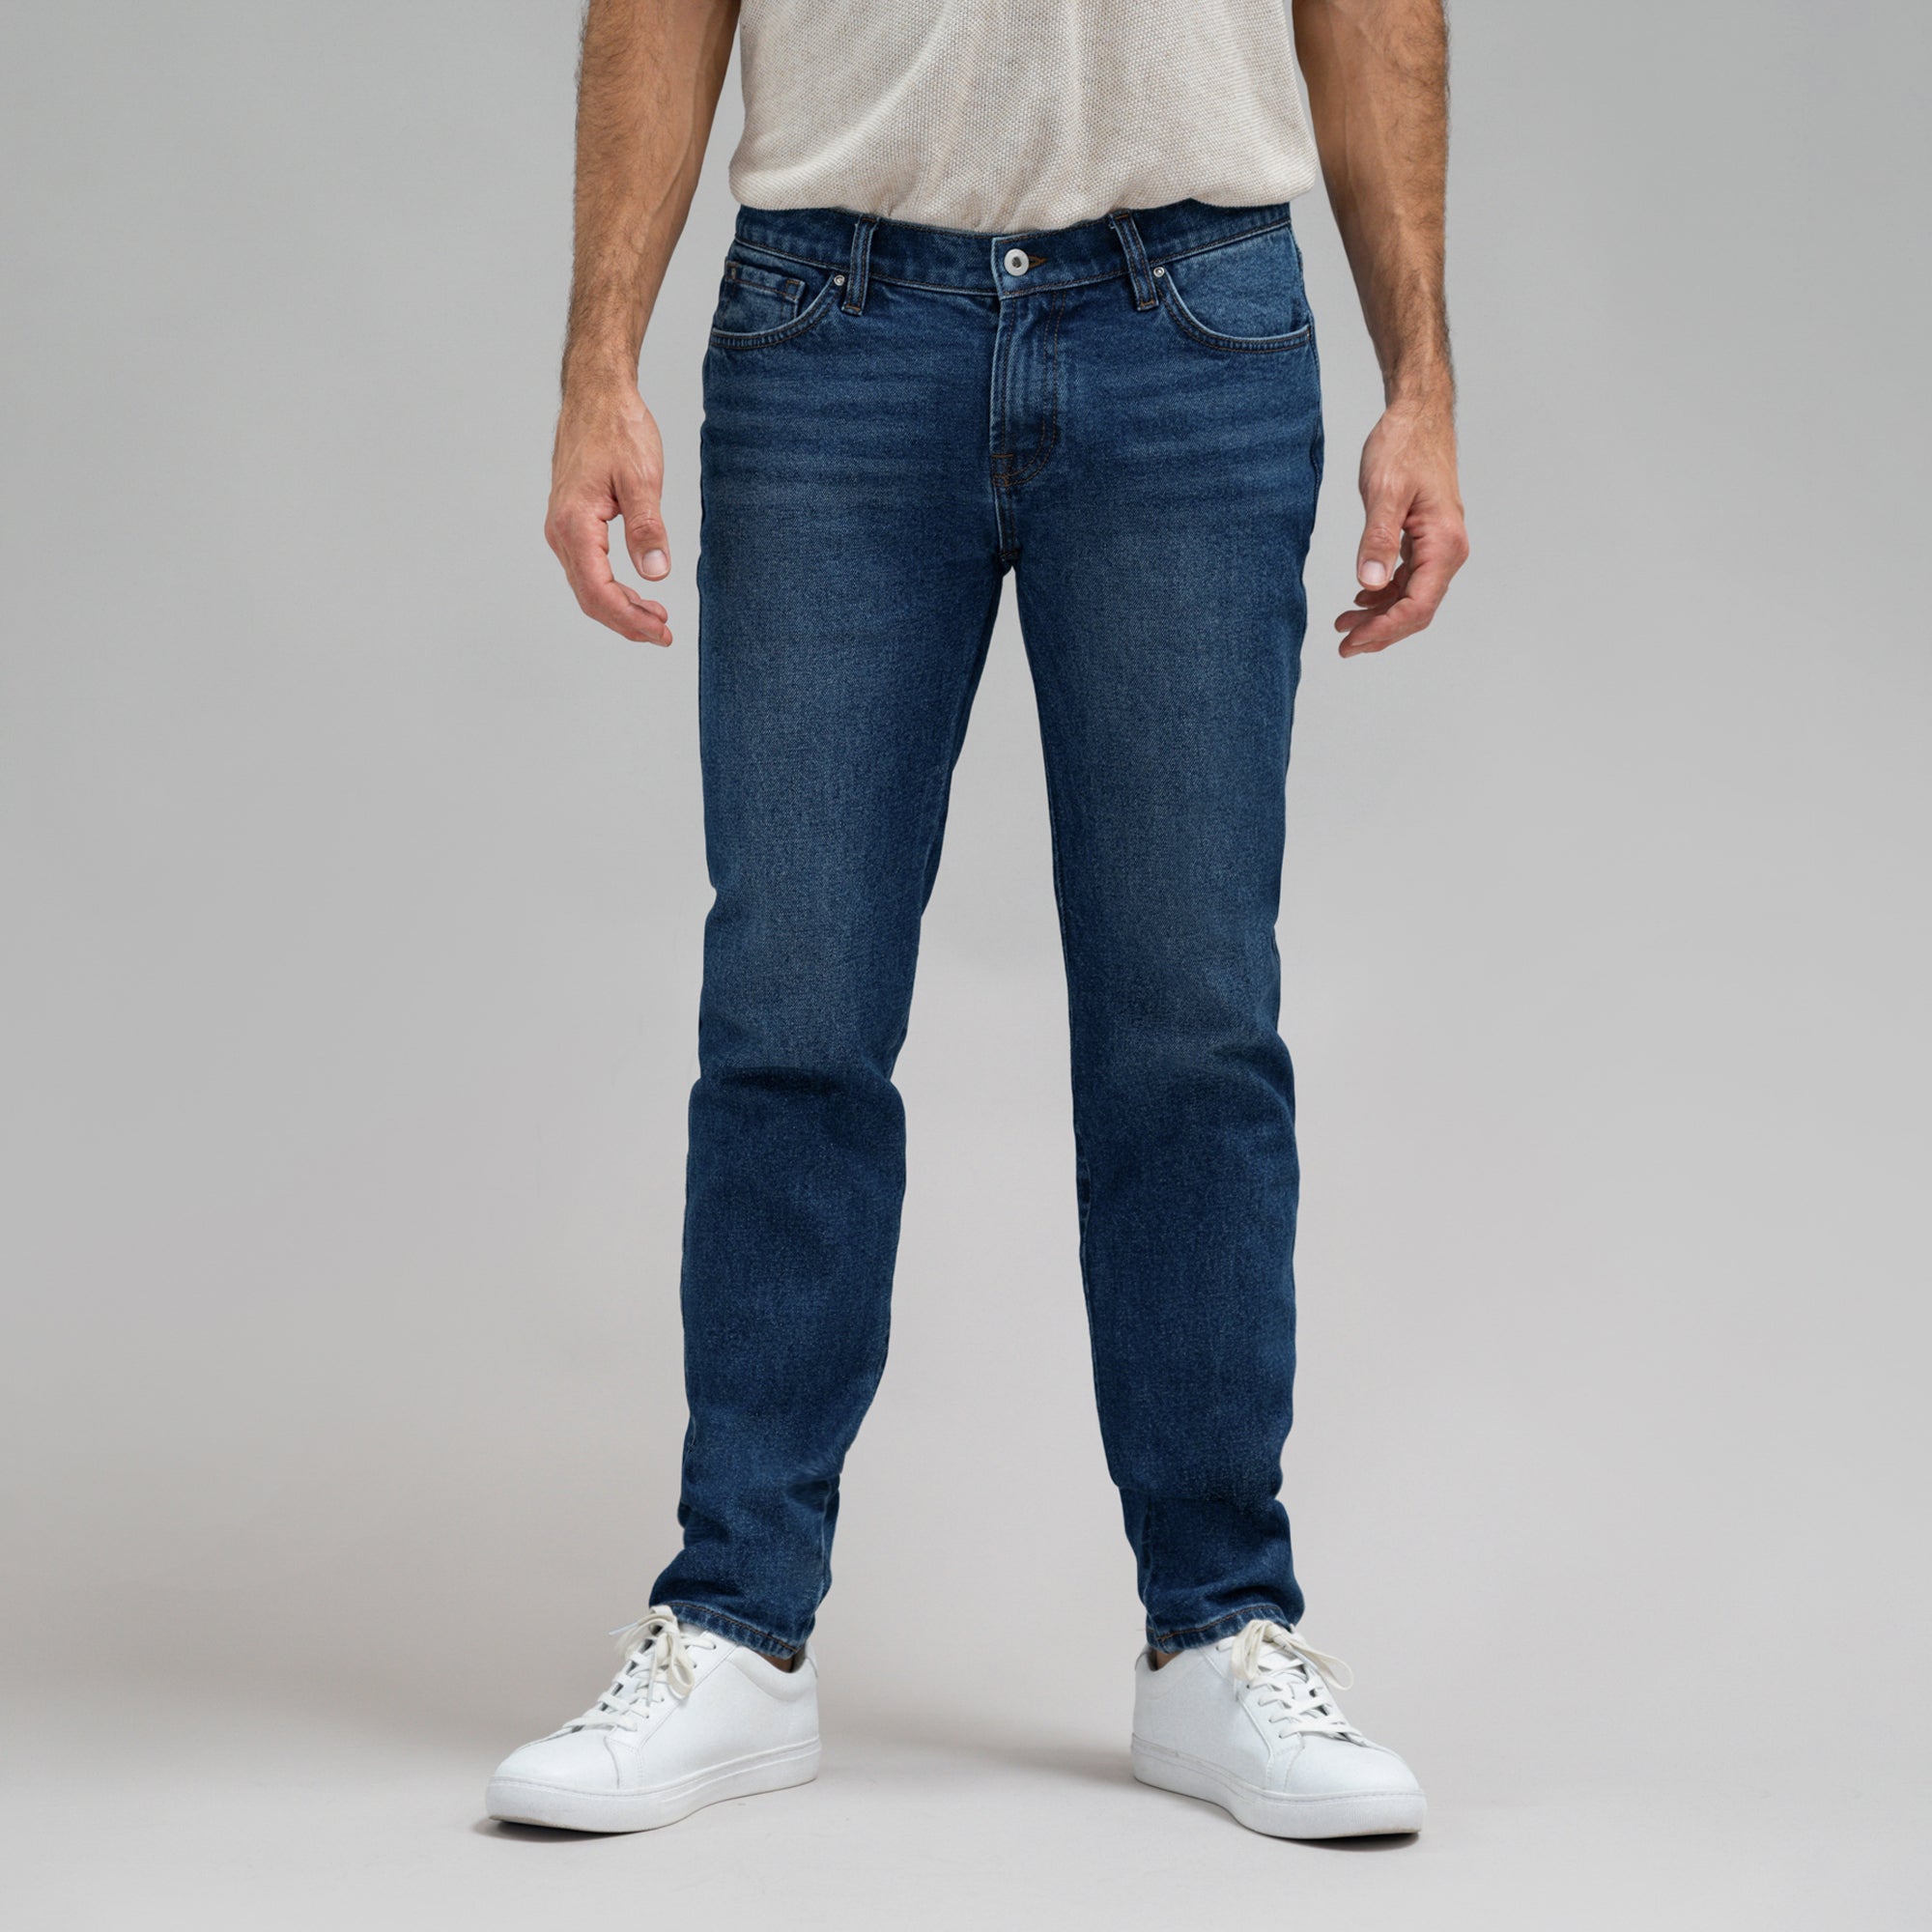 SENE - Men's Custom Jeans